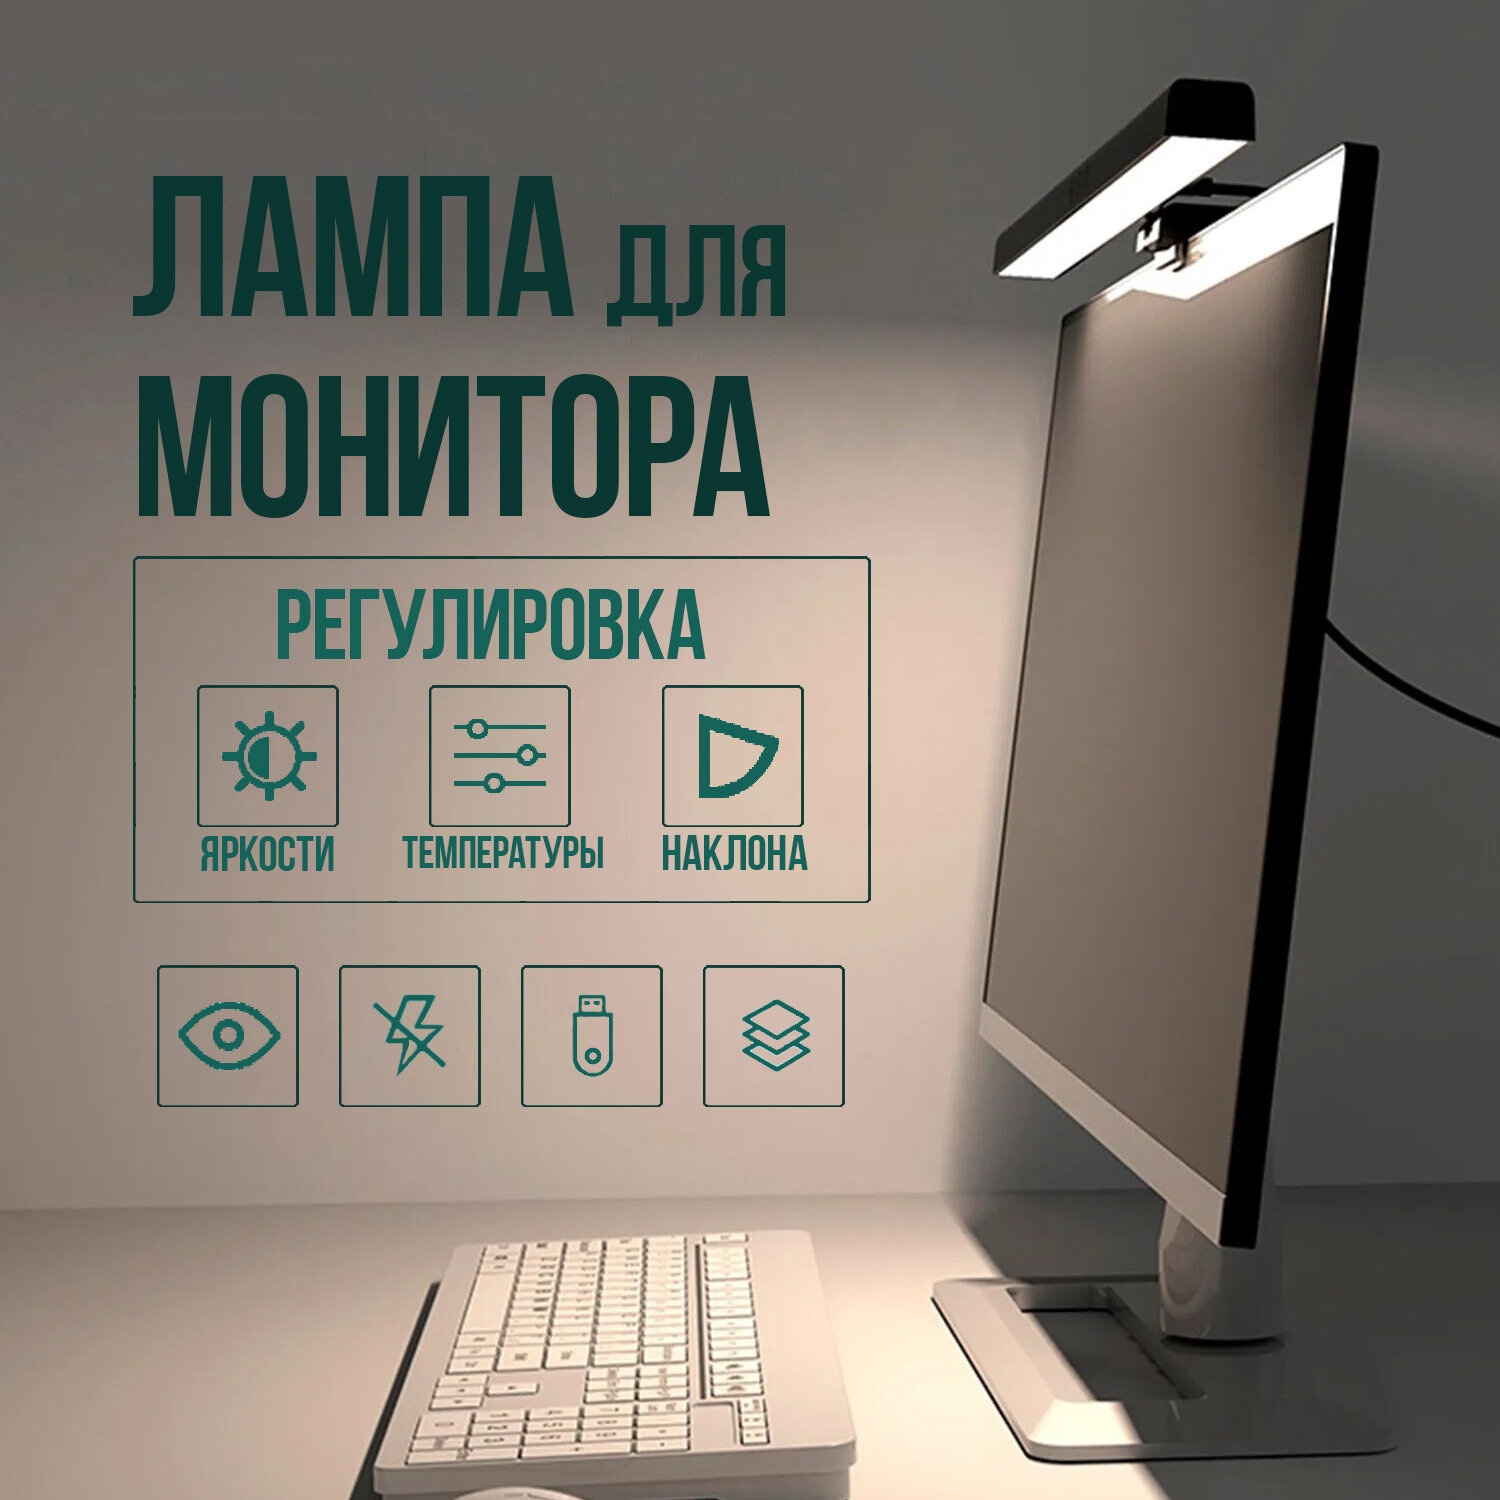 Лампа на монитор / Настольный светильник / Скринбар / Подсветка для компьютера / Светильник с креплением на монитор